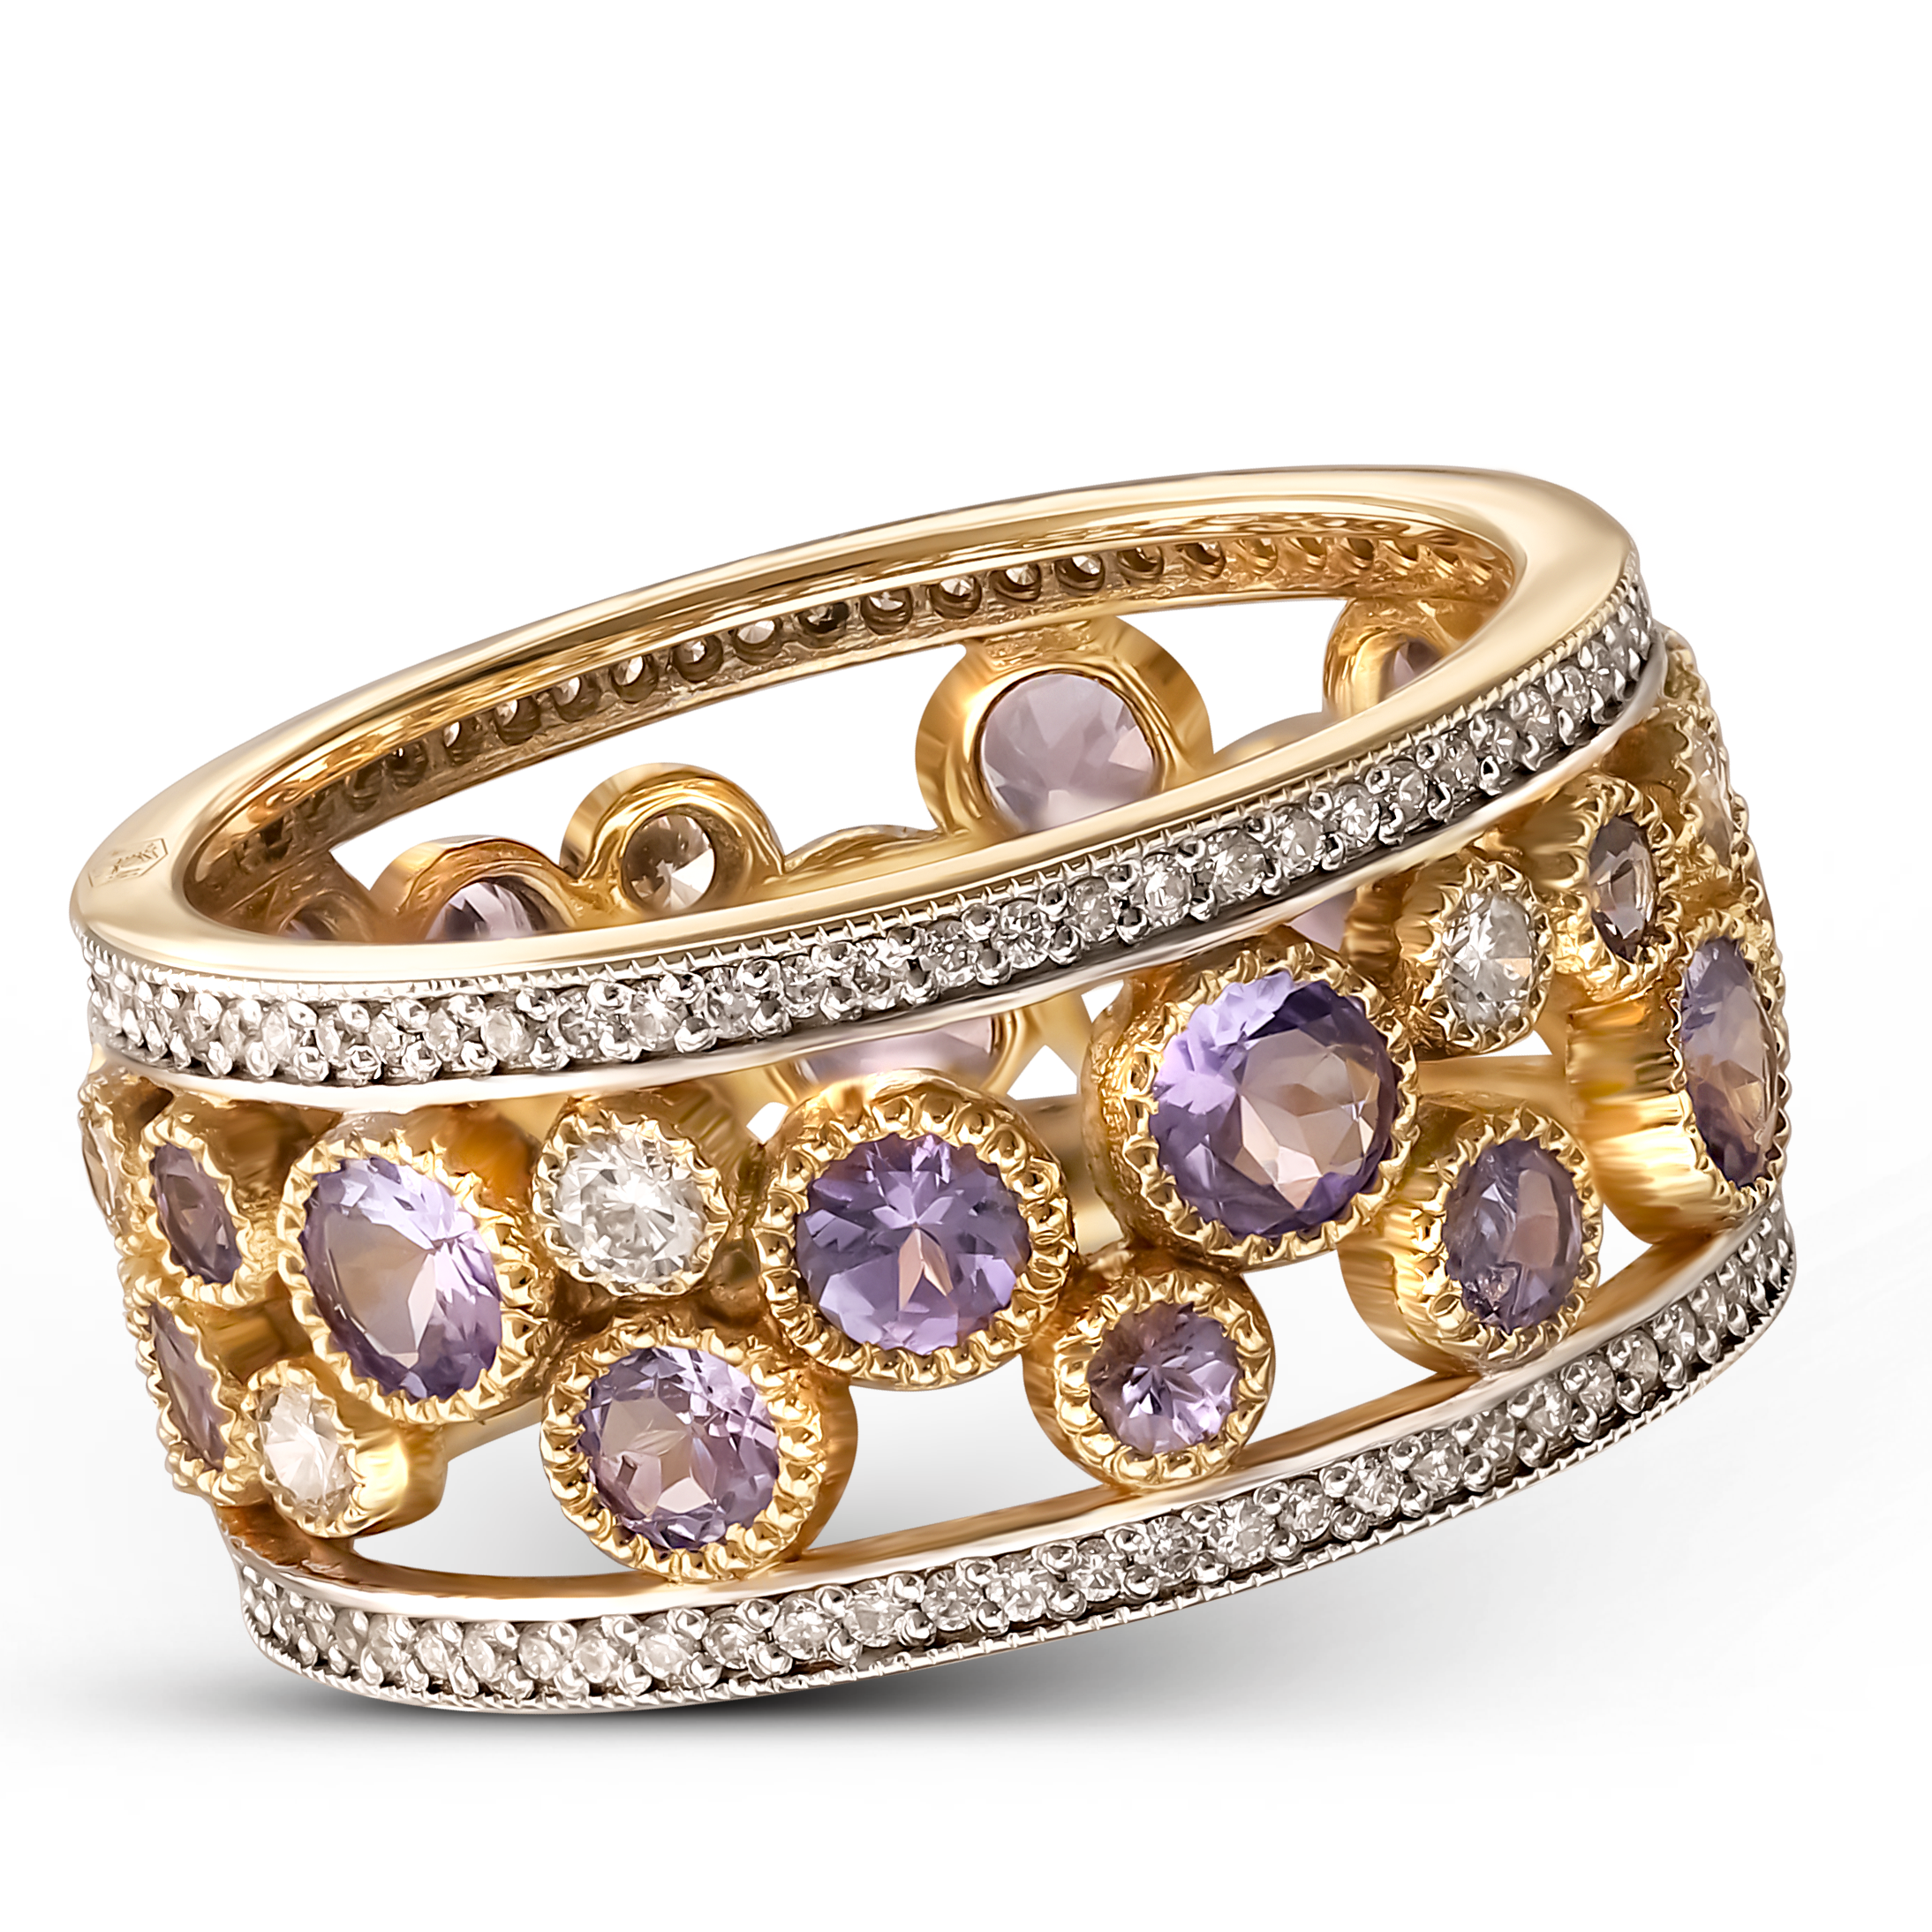 Luksusowy pierścionek obrączkowy z diamentami naturalnymi i tanzanitami, próba 585